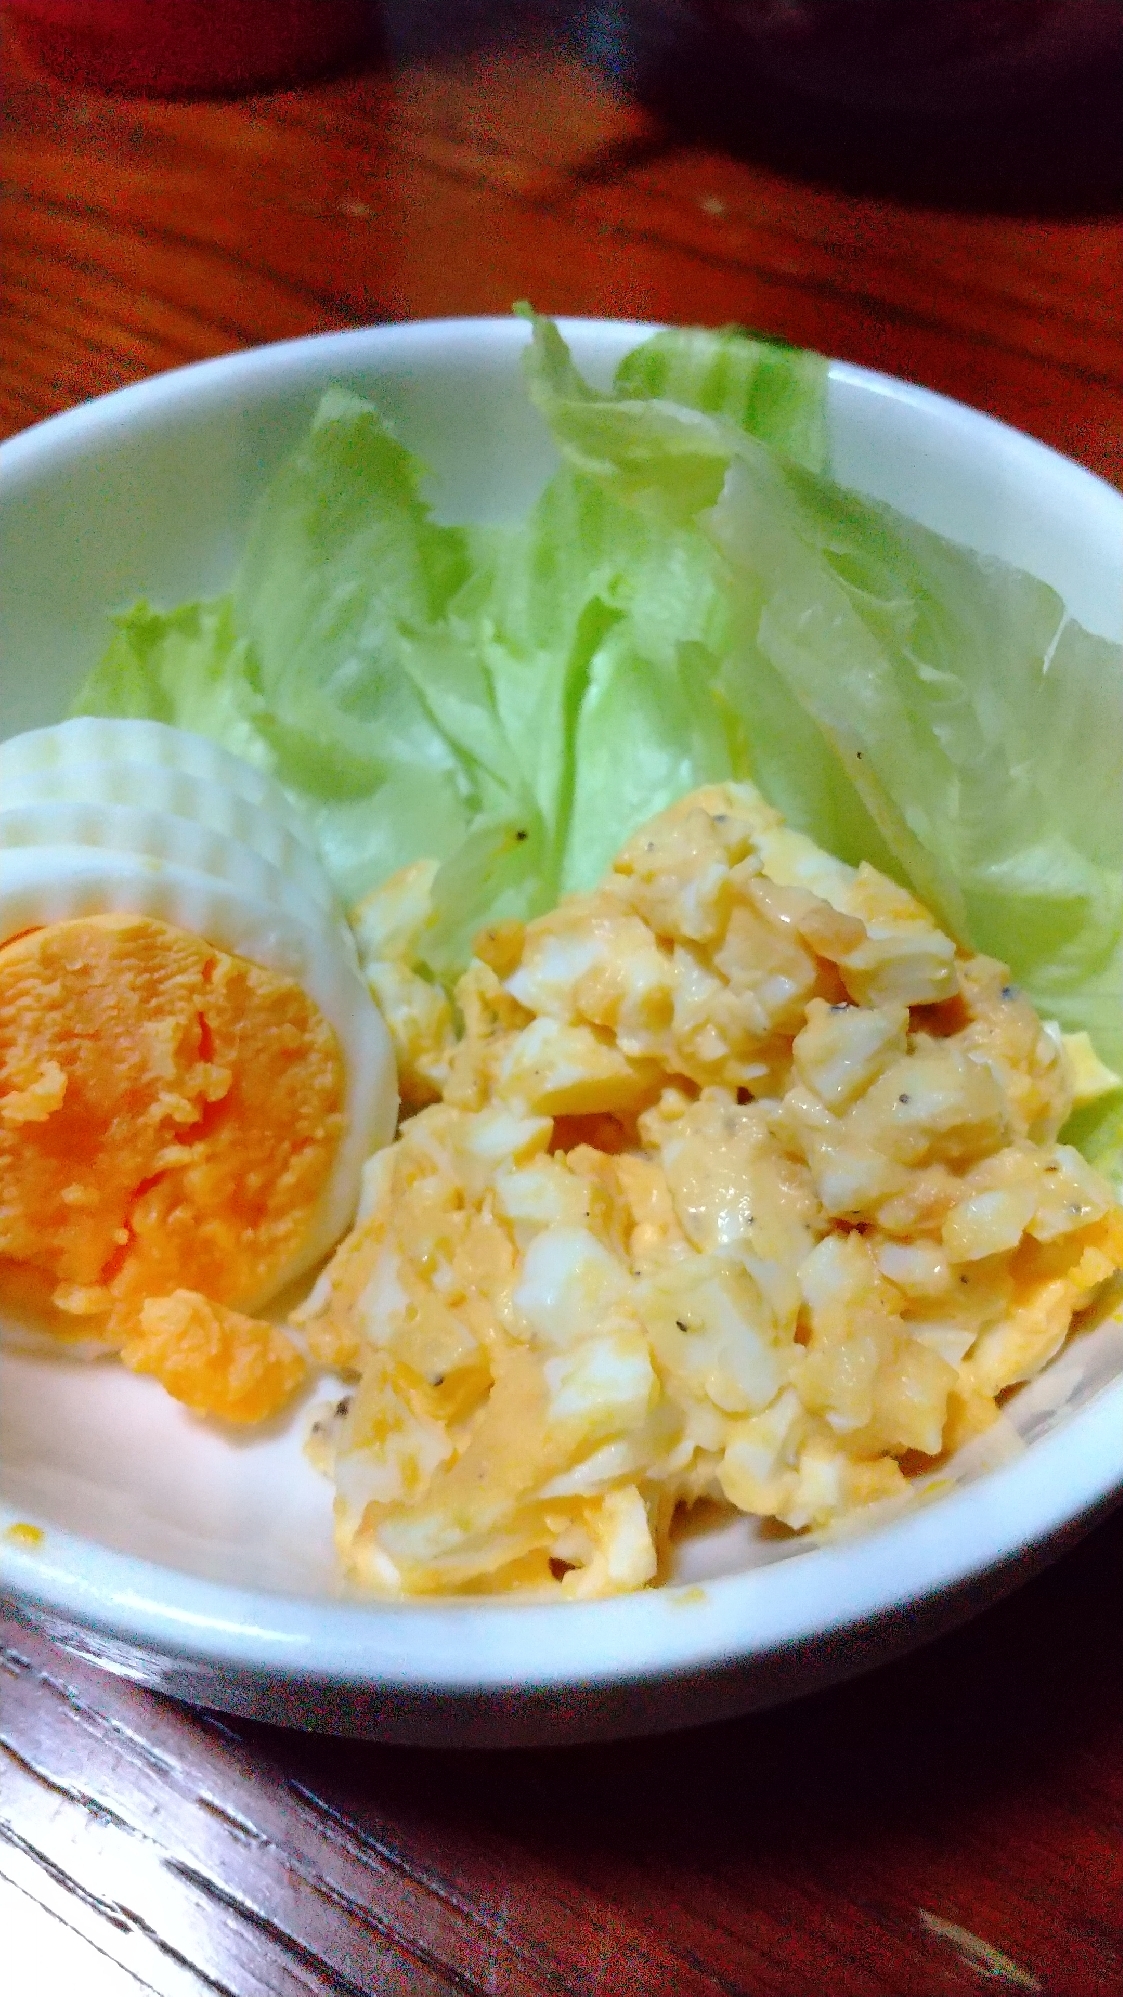 【朝活】朝の卵2種